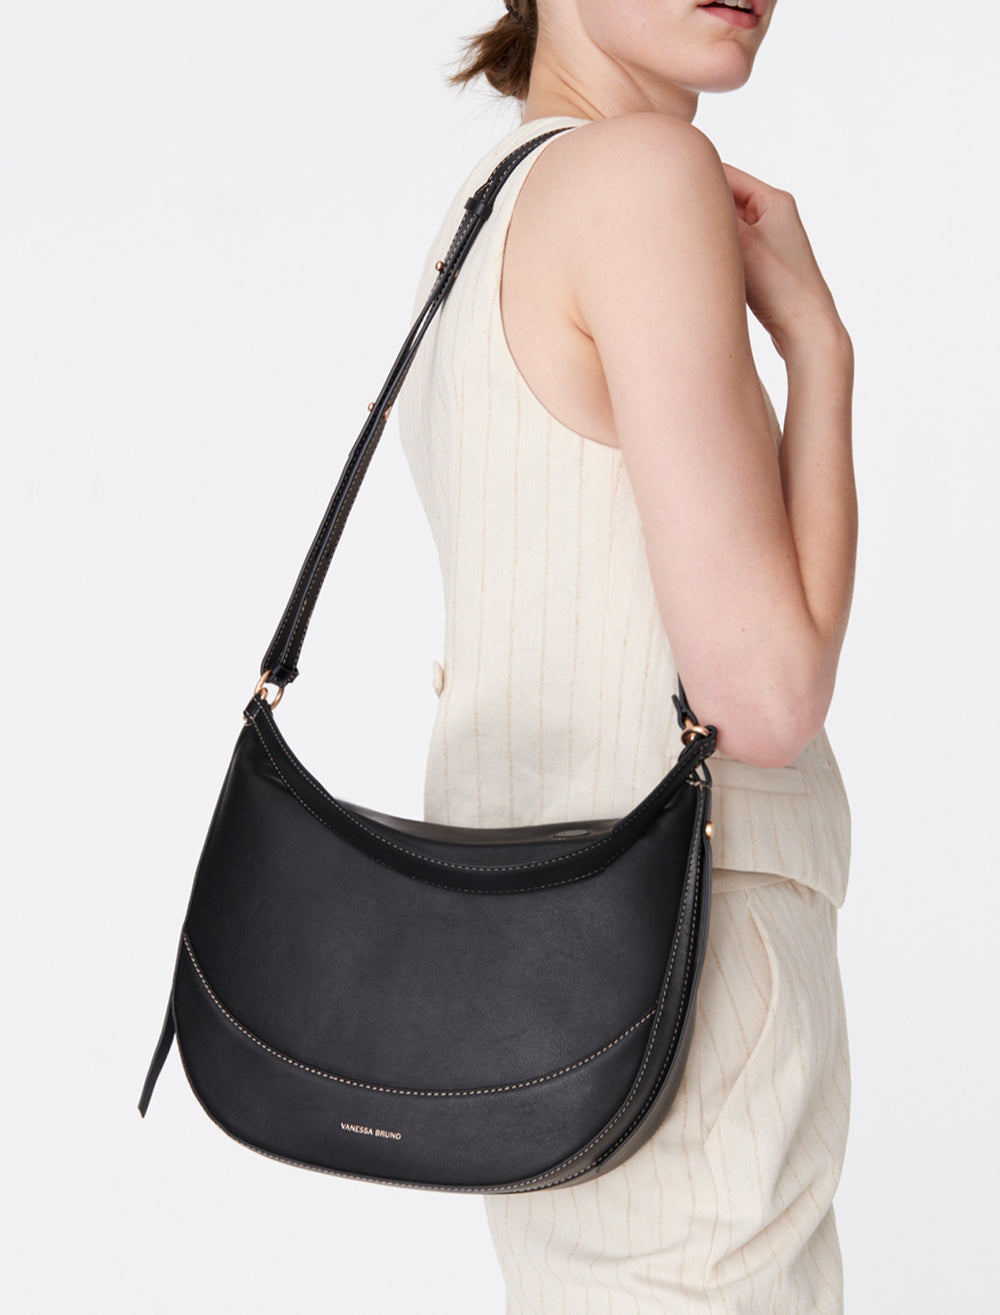 Model holding Vanessa Bruno's daily bag in noir.